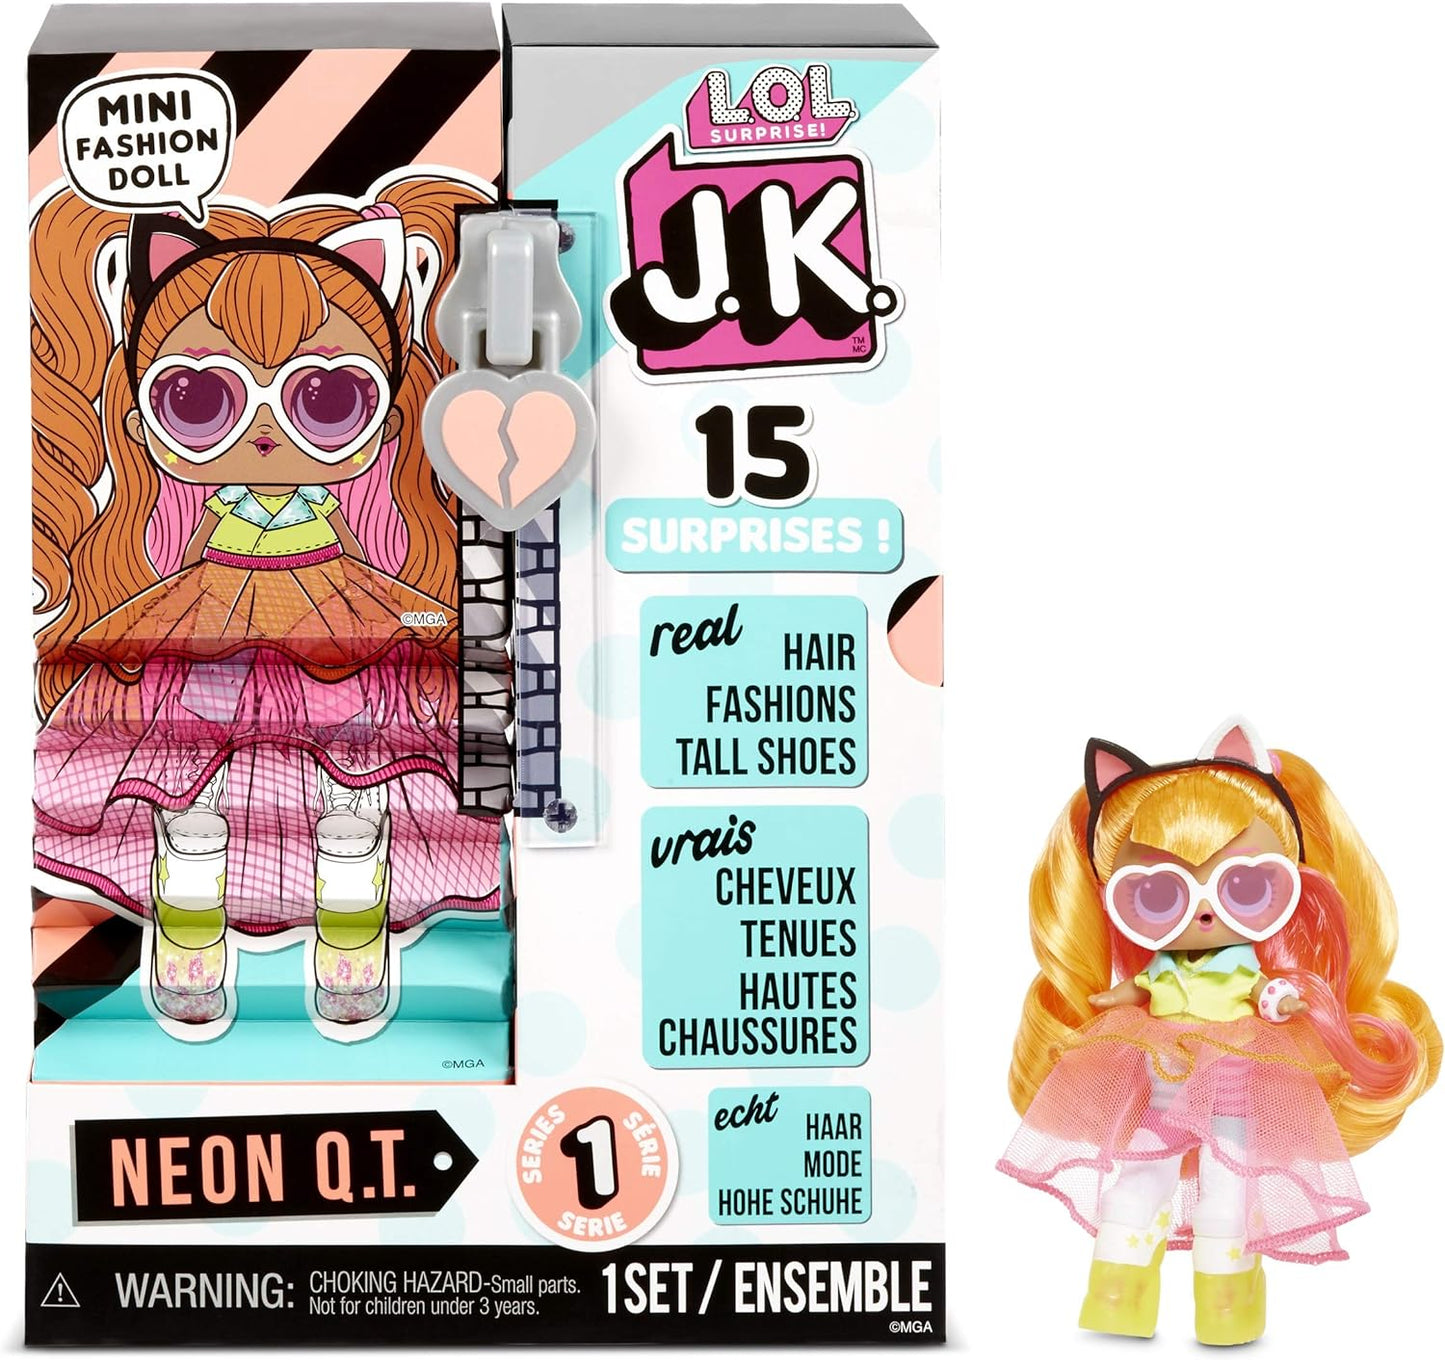 L.O.L. Surprise! JK Mini Fashion Doll - 15 surpresas, roupas e acessórios - colecionáveis - Neon Q.T.